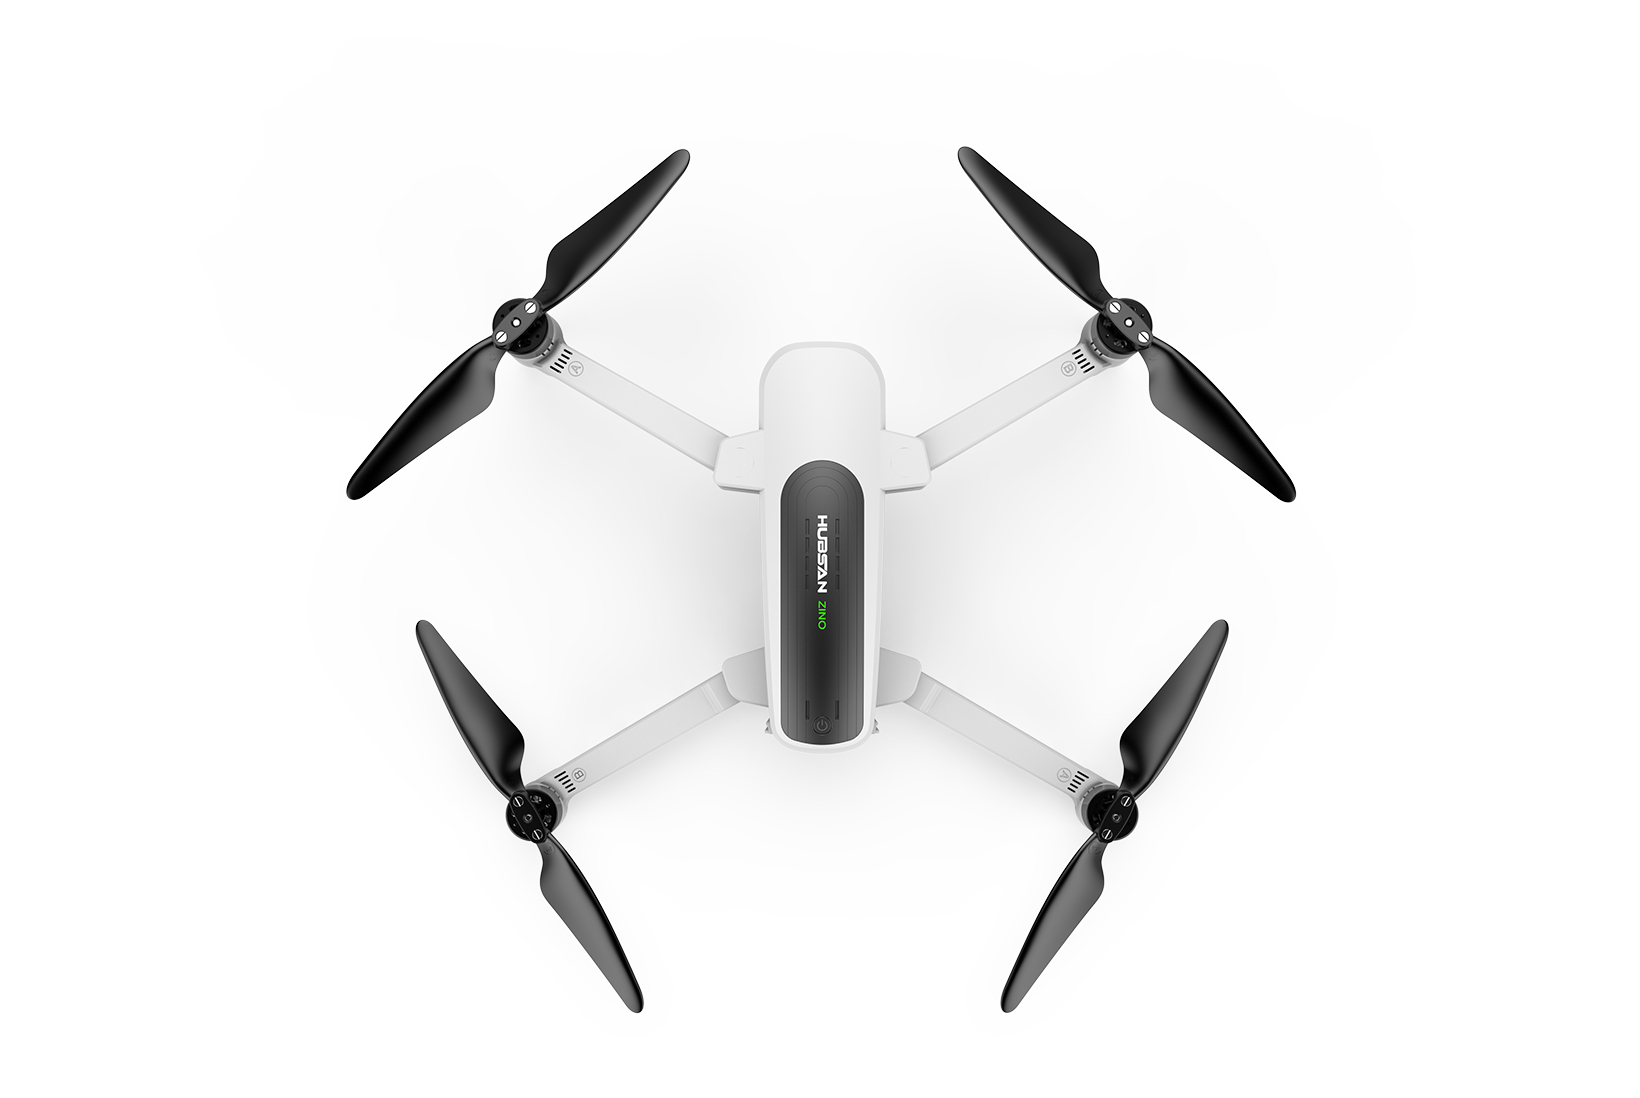 Drone Hubsan Zino 2 : semi professional camera drone